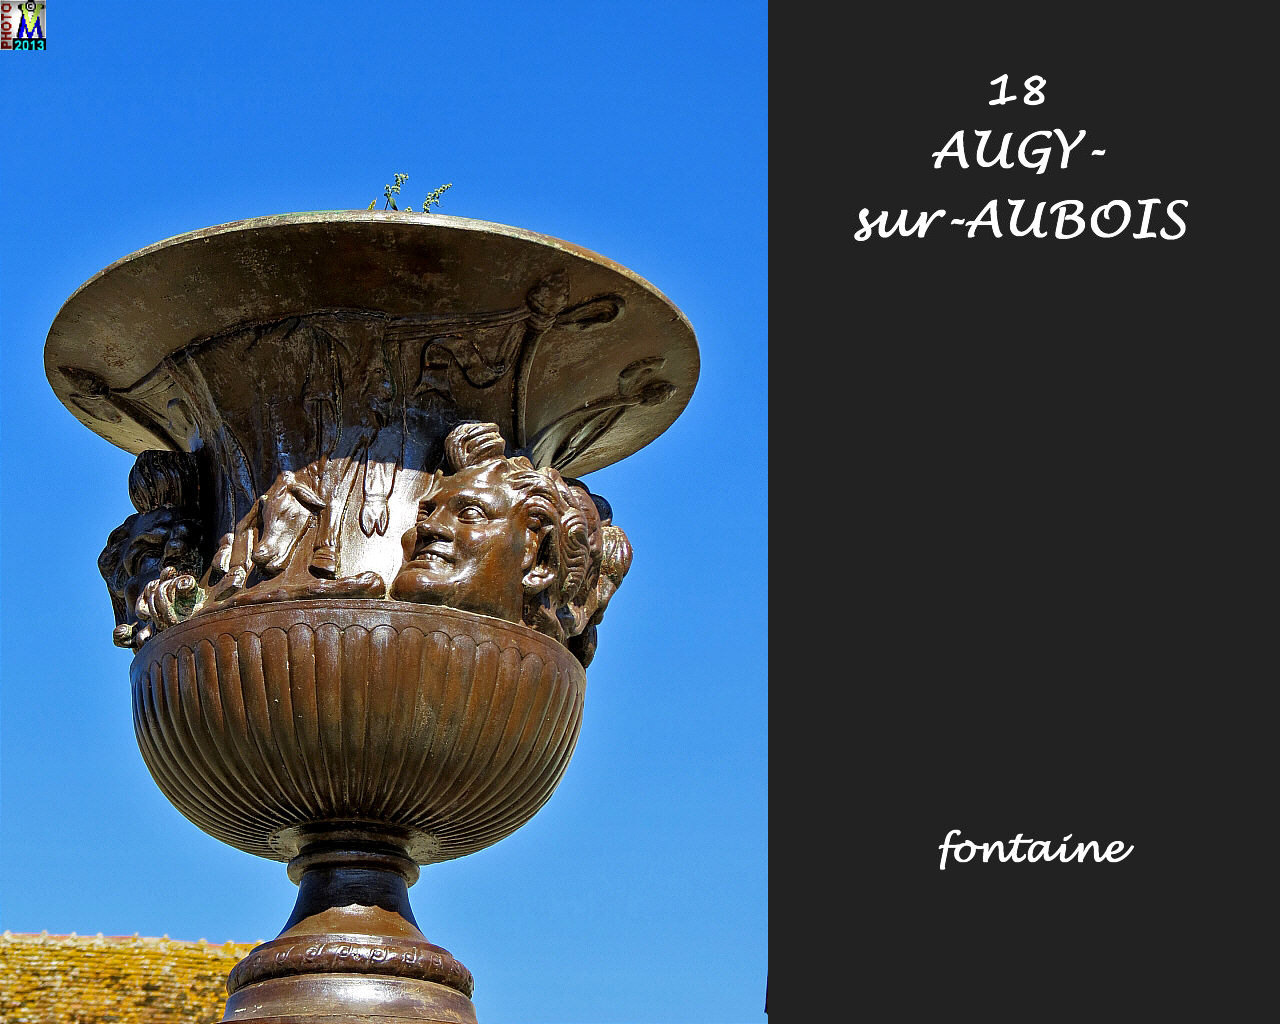 18AUGY-AUBOIS_fontaine_104.jpg